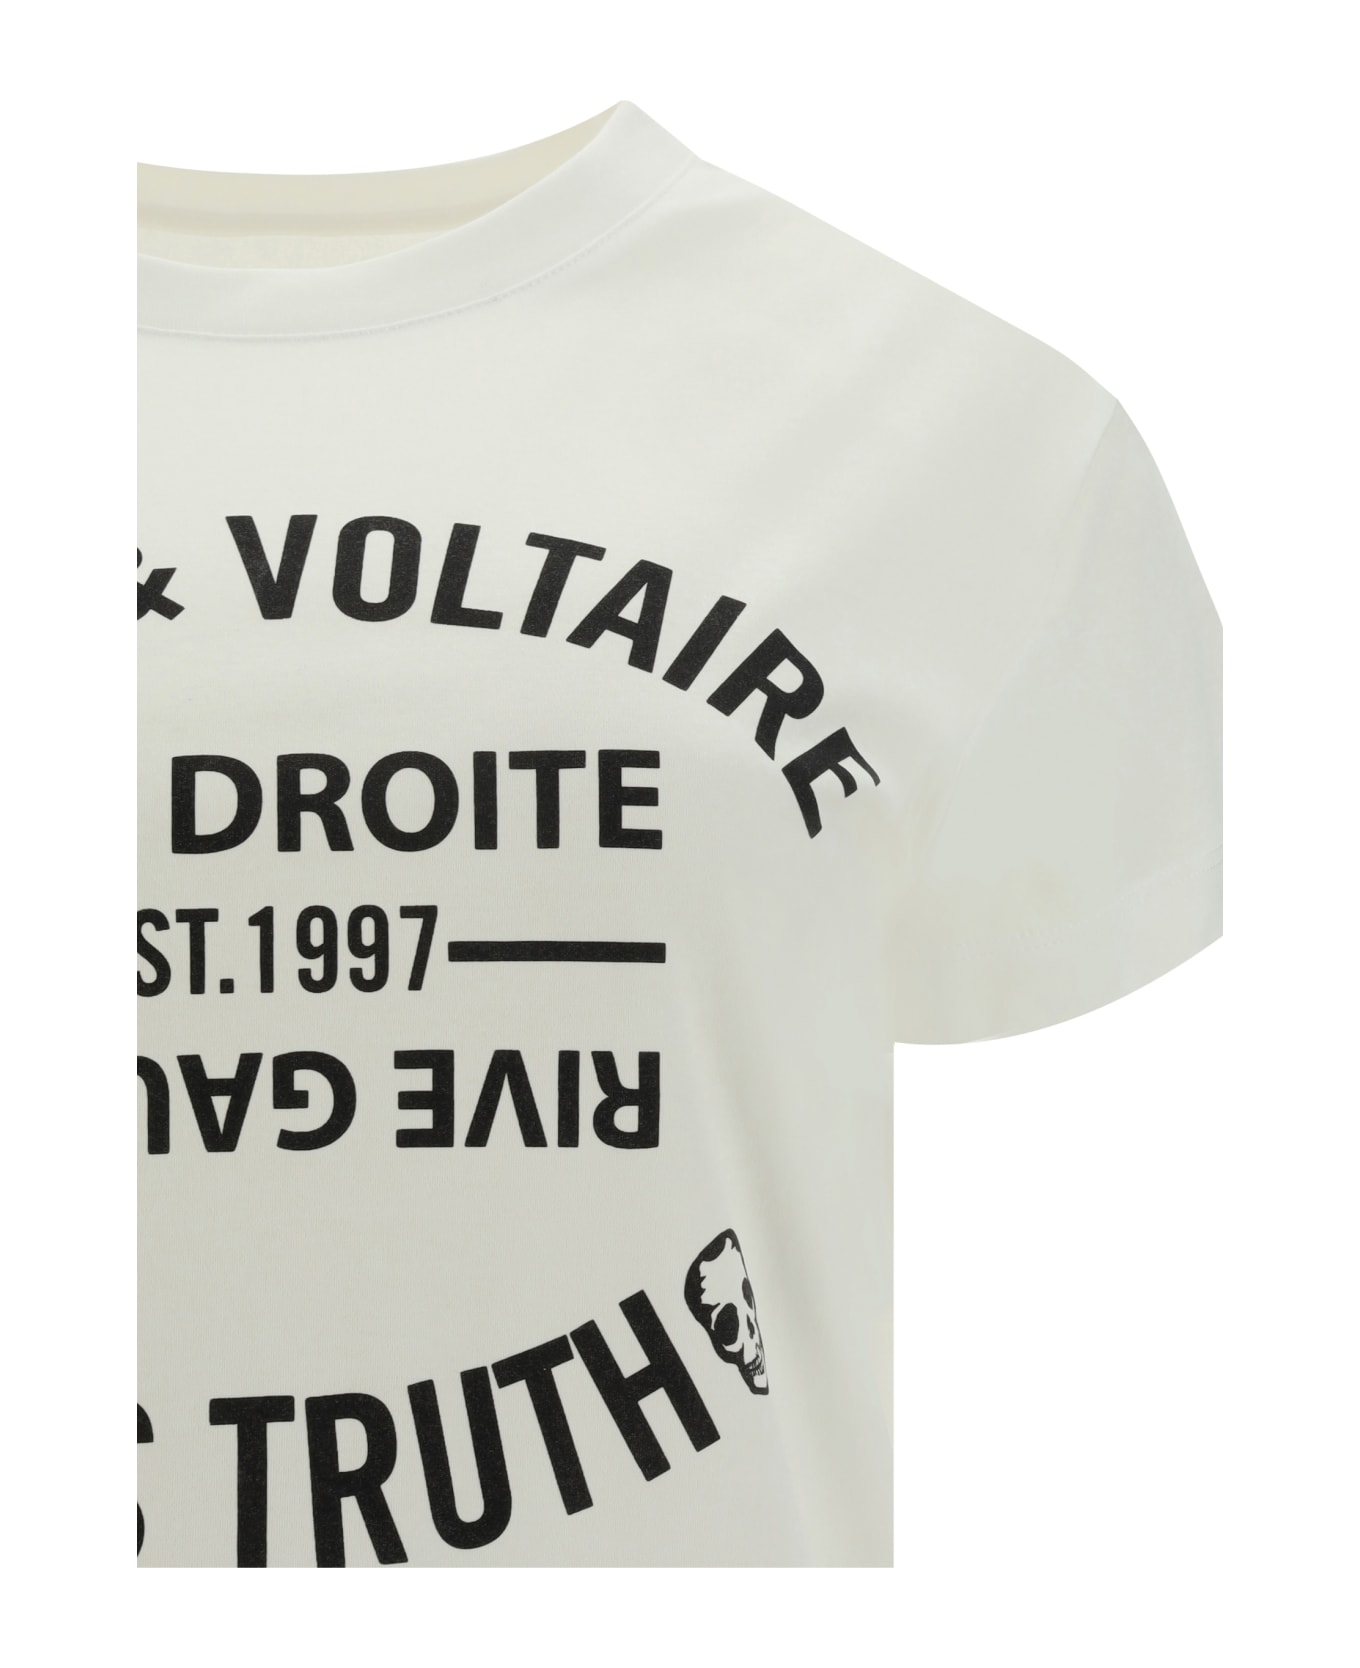 Zadig & Voltaire Walk Blason T-shirt - Blanc